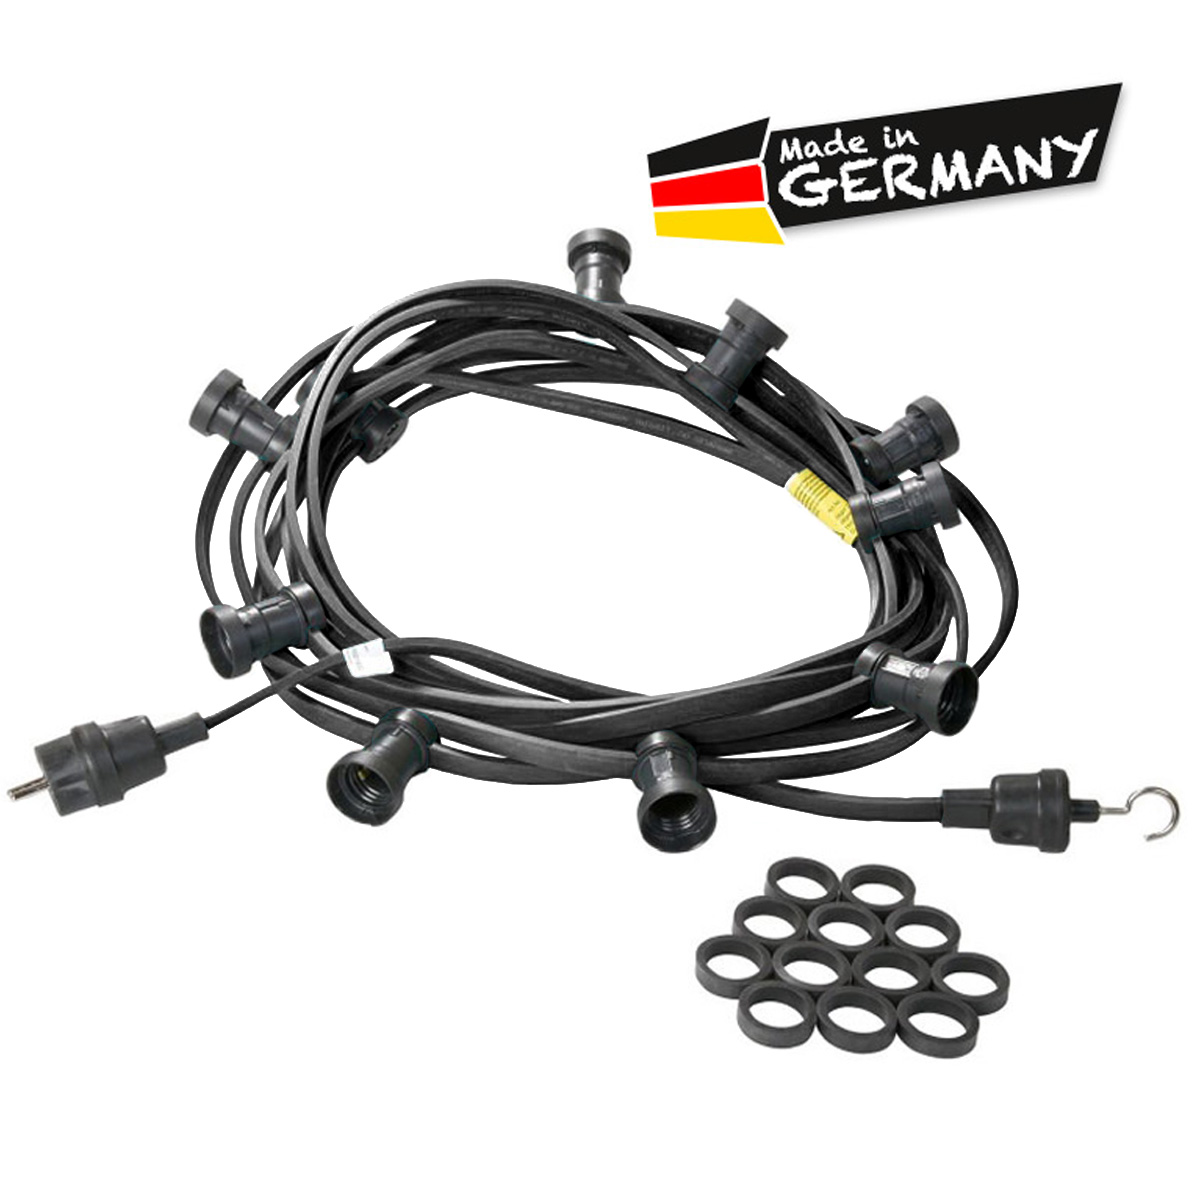 Illu-/Partylichterkette schwarz 10m | Außenlichterkette | Made in Germany | 30 x E27 Schraubfassung